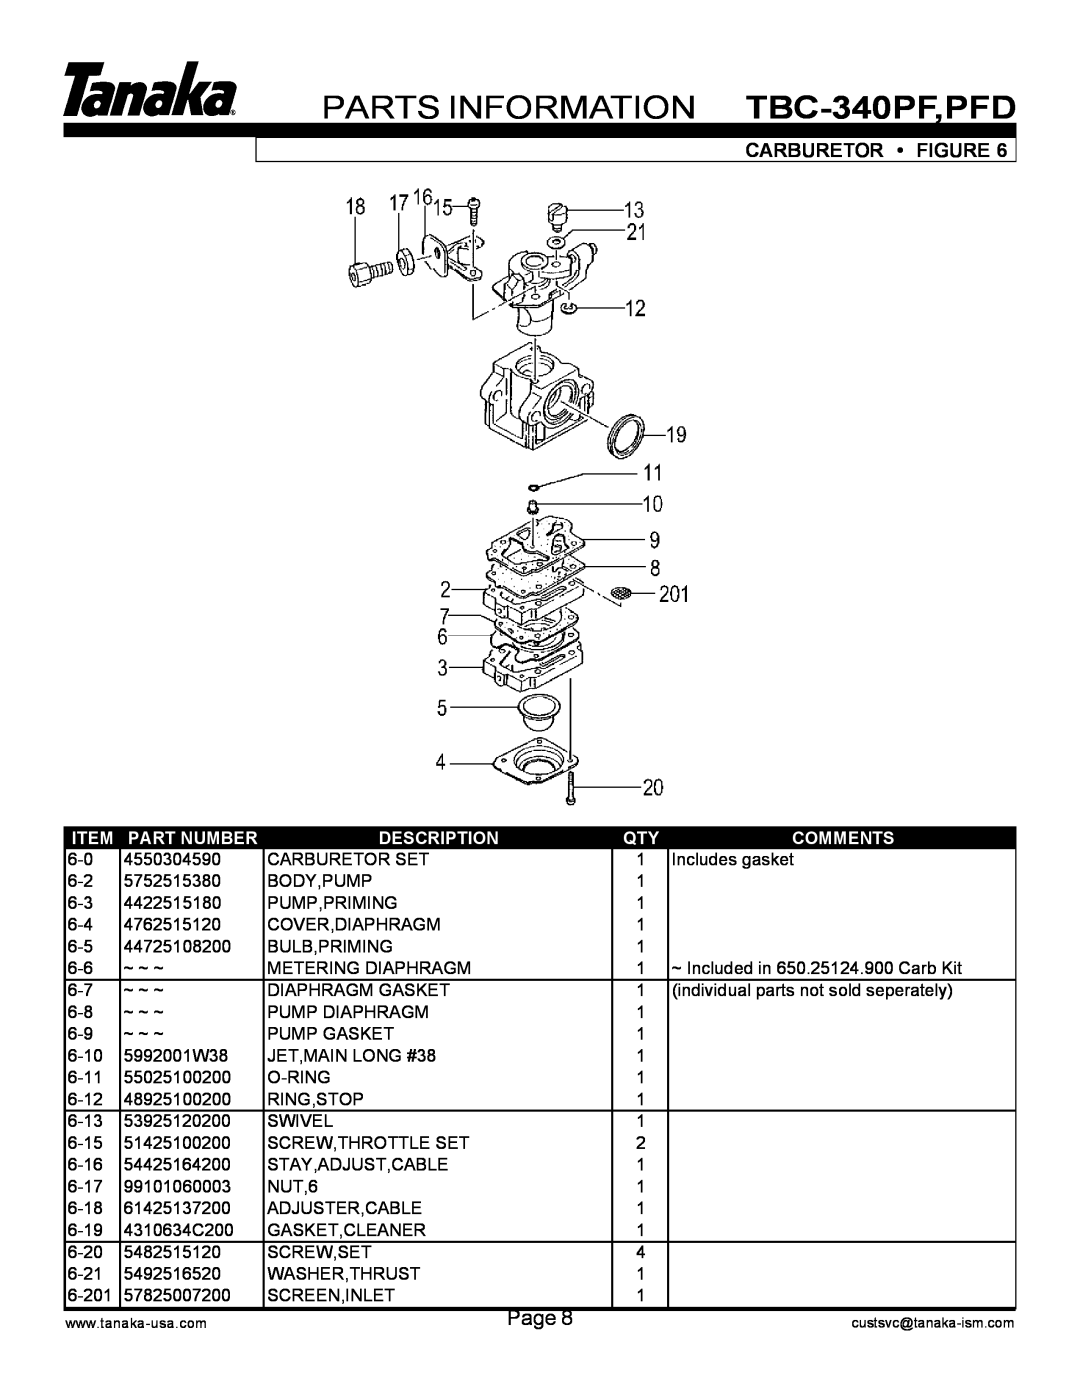 Tanaka manual PARTS INFORMATION TBC-340PF,PFD, Carburetor Figure, Part Number, Description, Comments 